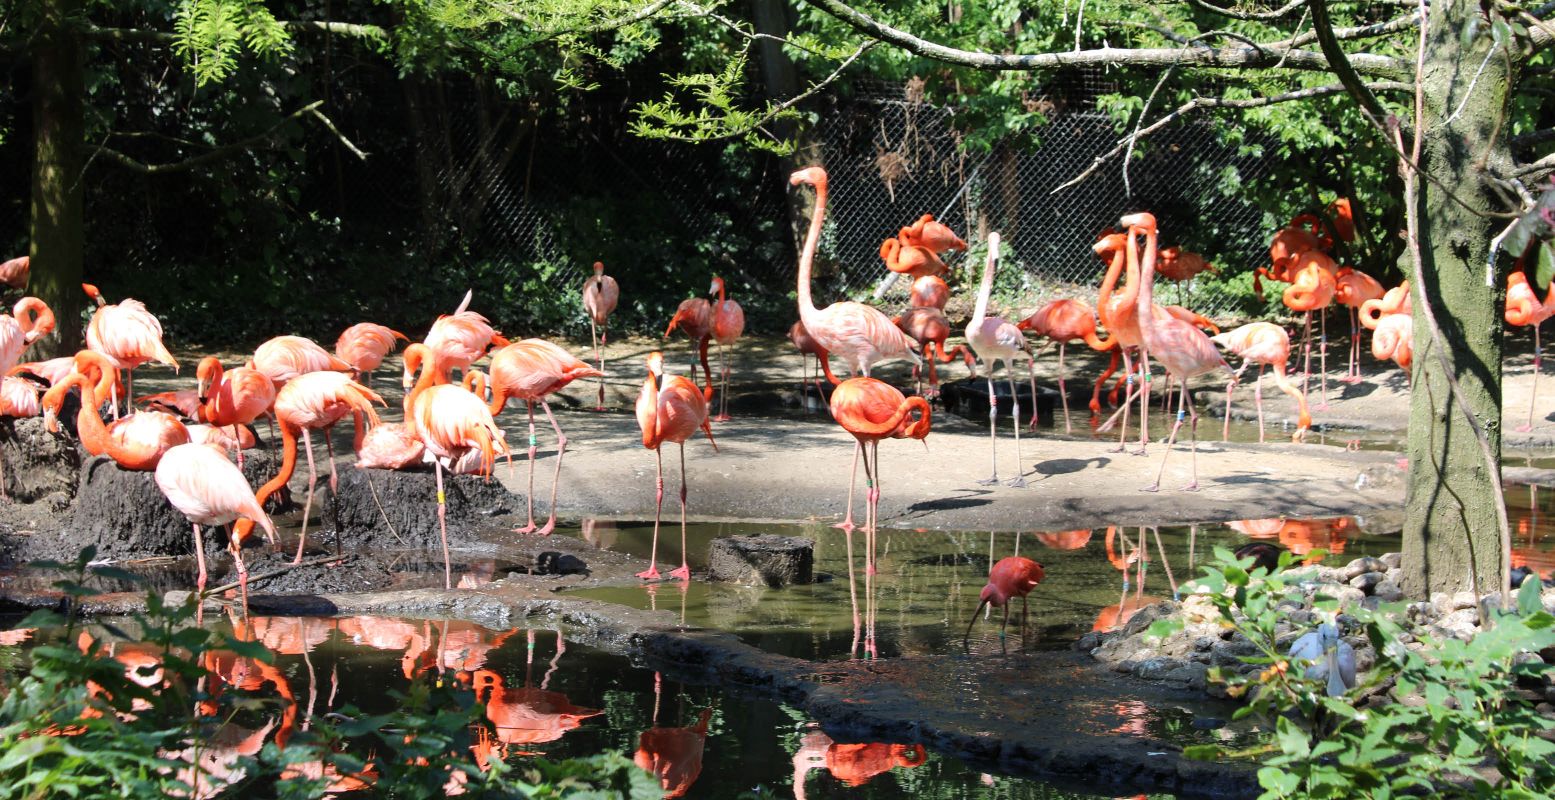 Bewonder de volière vol met flamingo's. Foto: DagjeWeg.NL